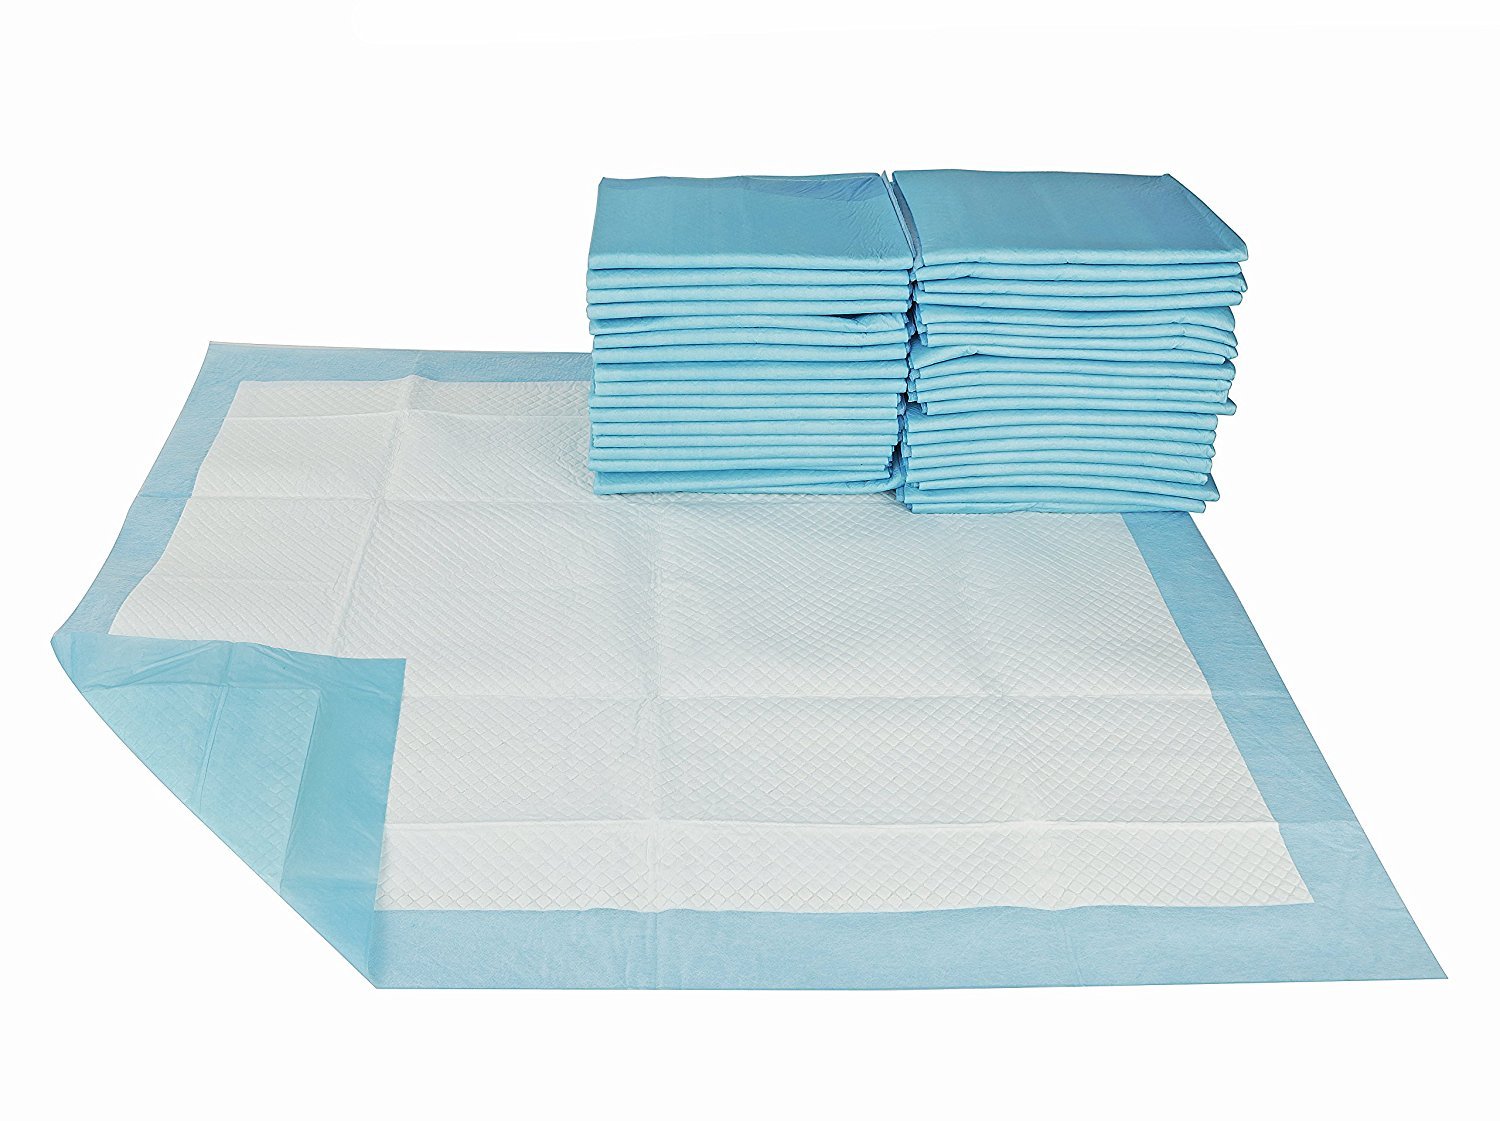 고흡수성 요실금 용품 간호용 침대 패드 무료 샘플이 포함된 고품질 성인 언더패드